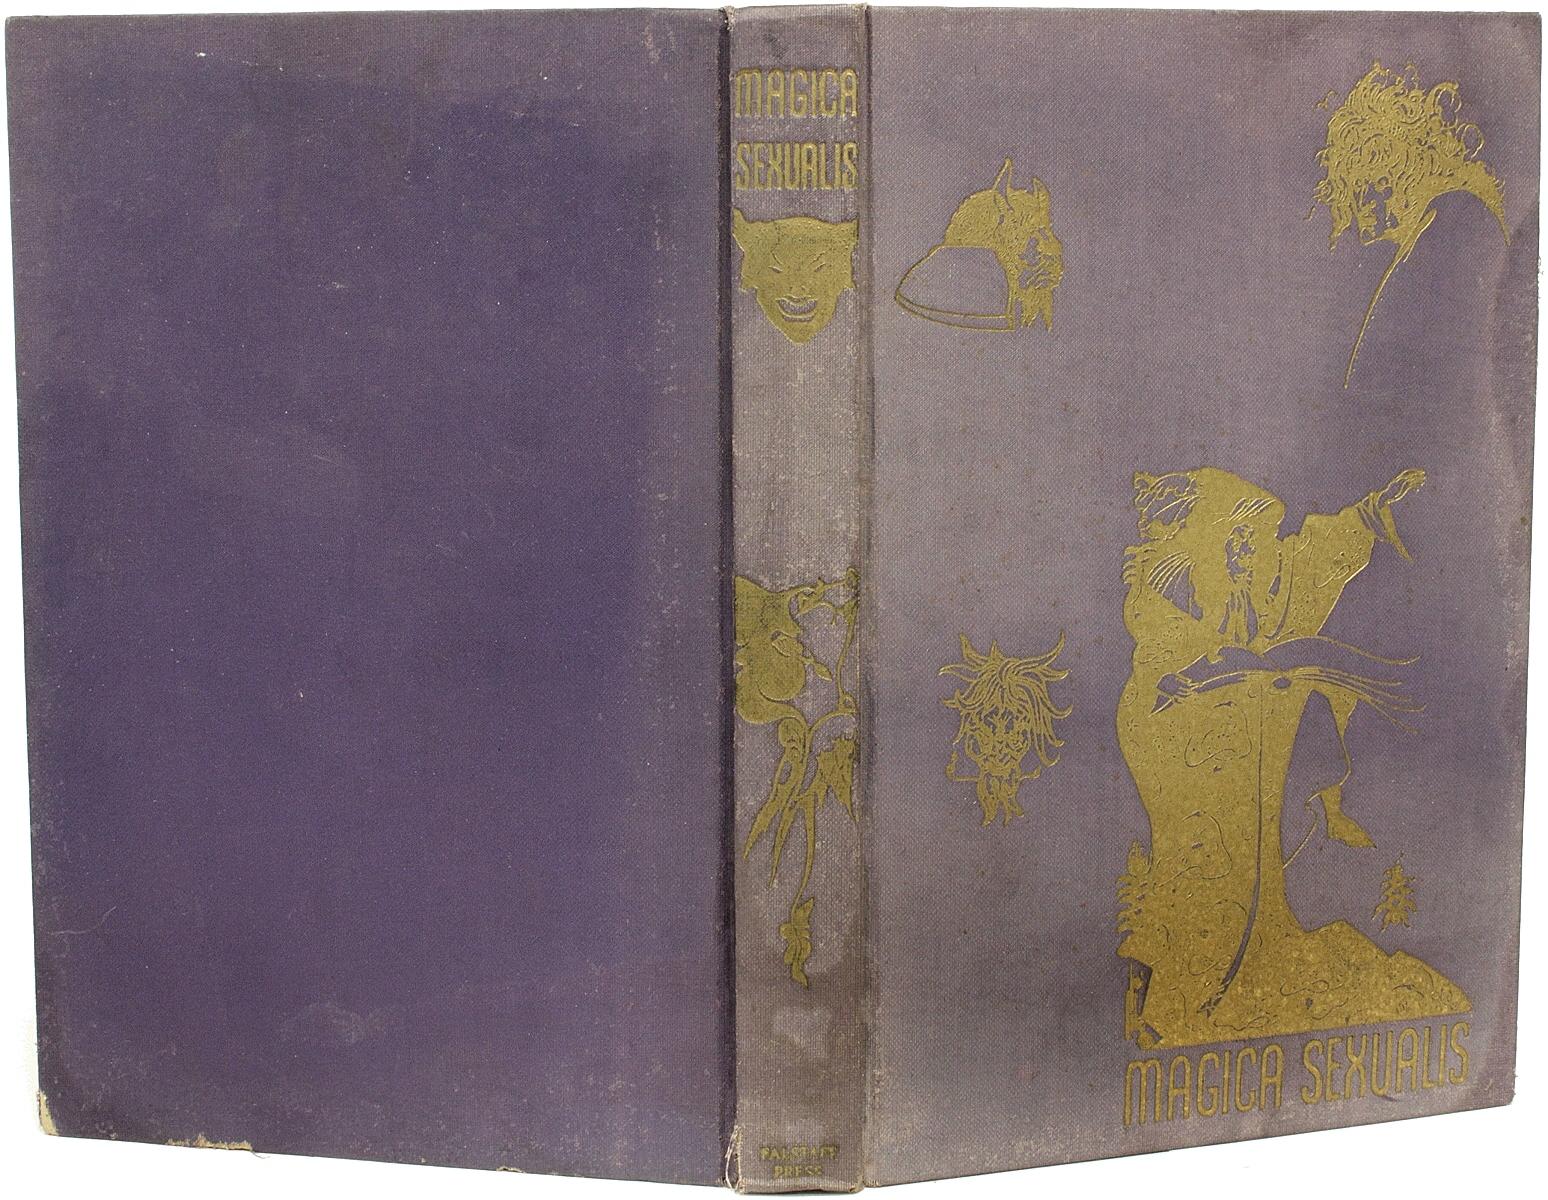 North American LAURENT, Emile & Paul Nagoury, MAGICA SEXUALIS Mystic Love Books, 1934